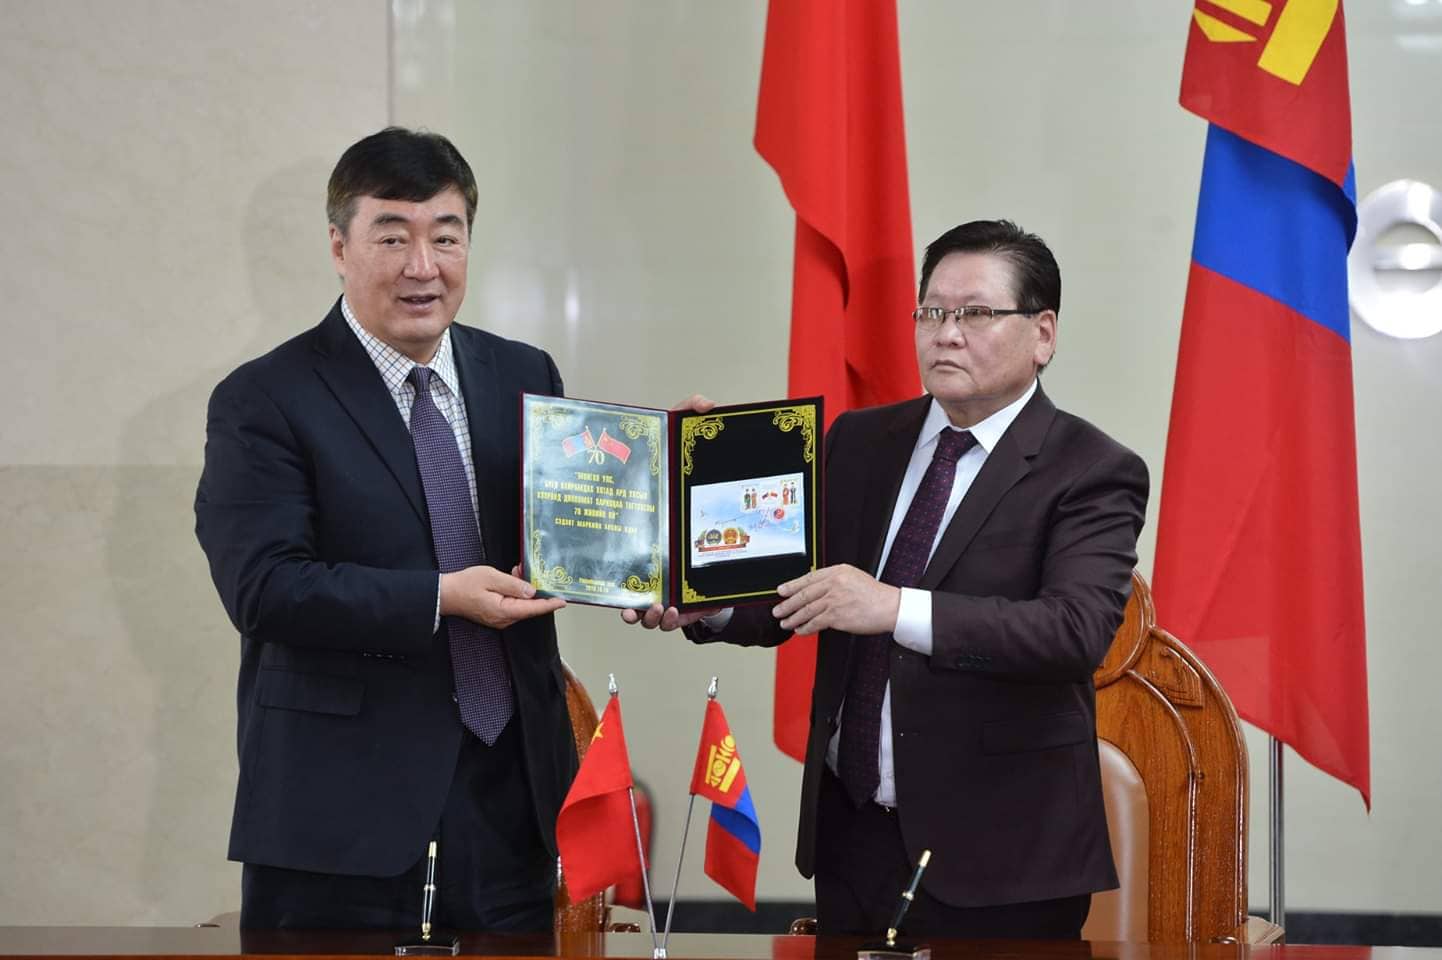 Монгол, Хятадын дипломат харилцааны 70 жилийн ойн шуудангийн марк худалдаанд гарлаа